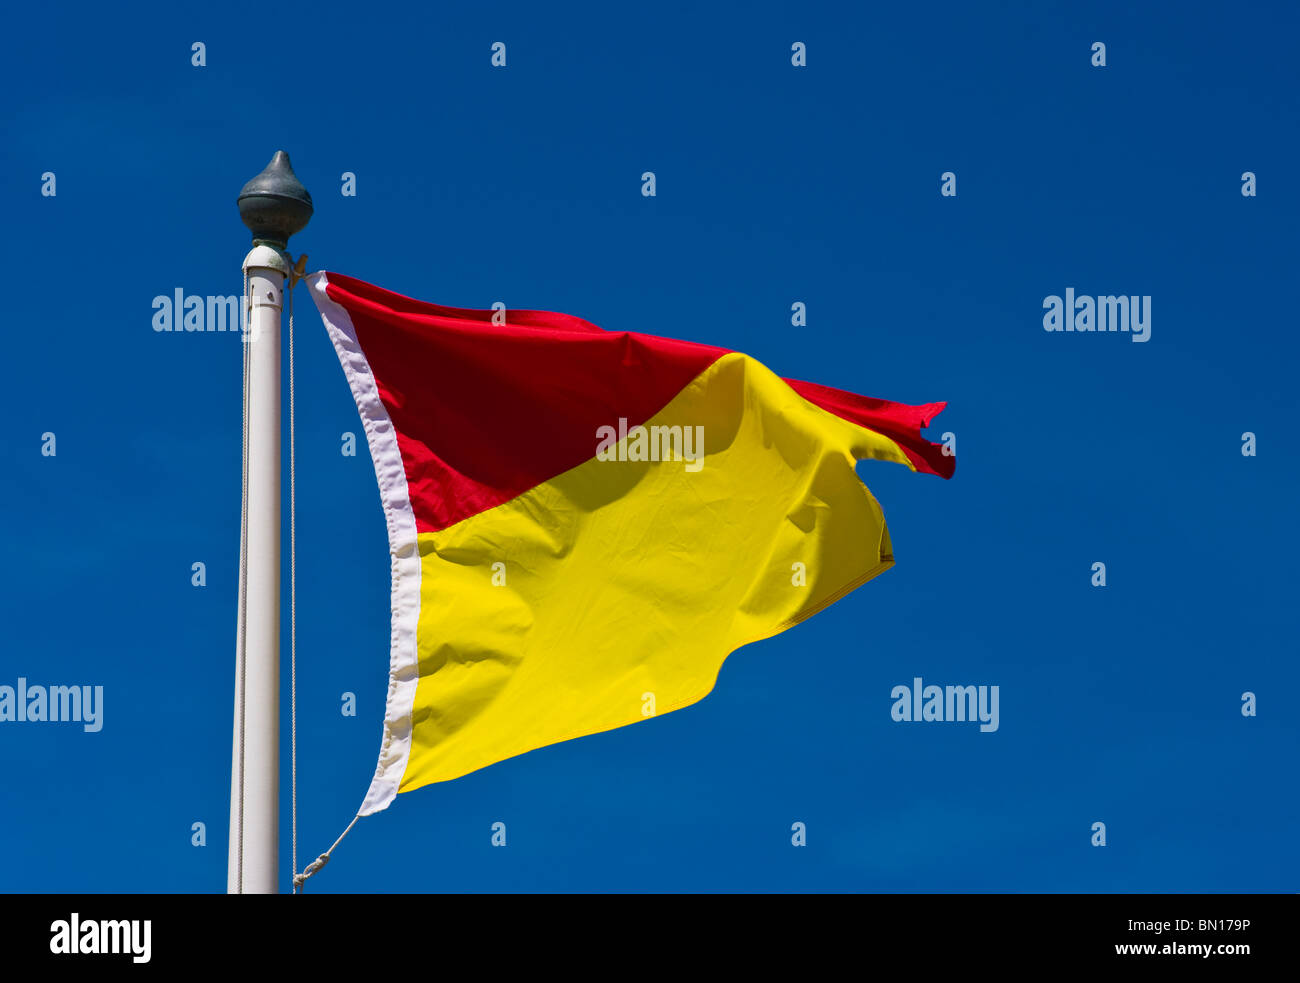 UK Red und Yellow Beach Flag Bademeister. Stockfoto